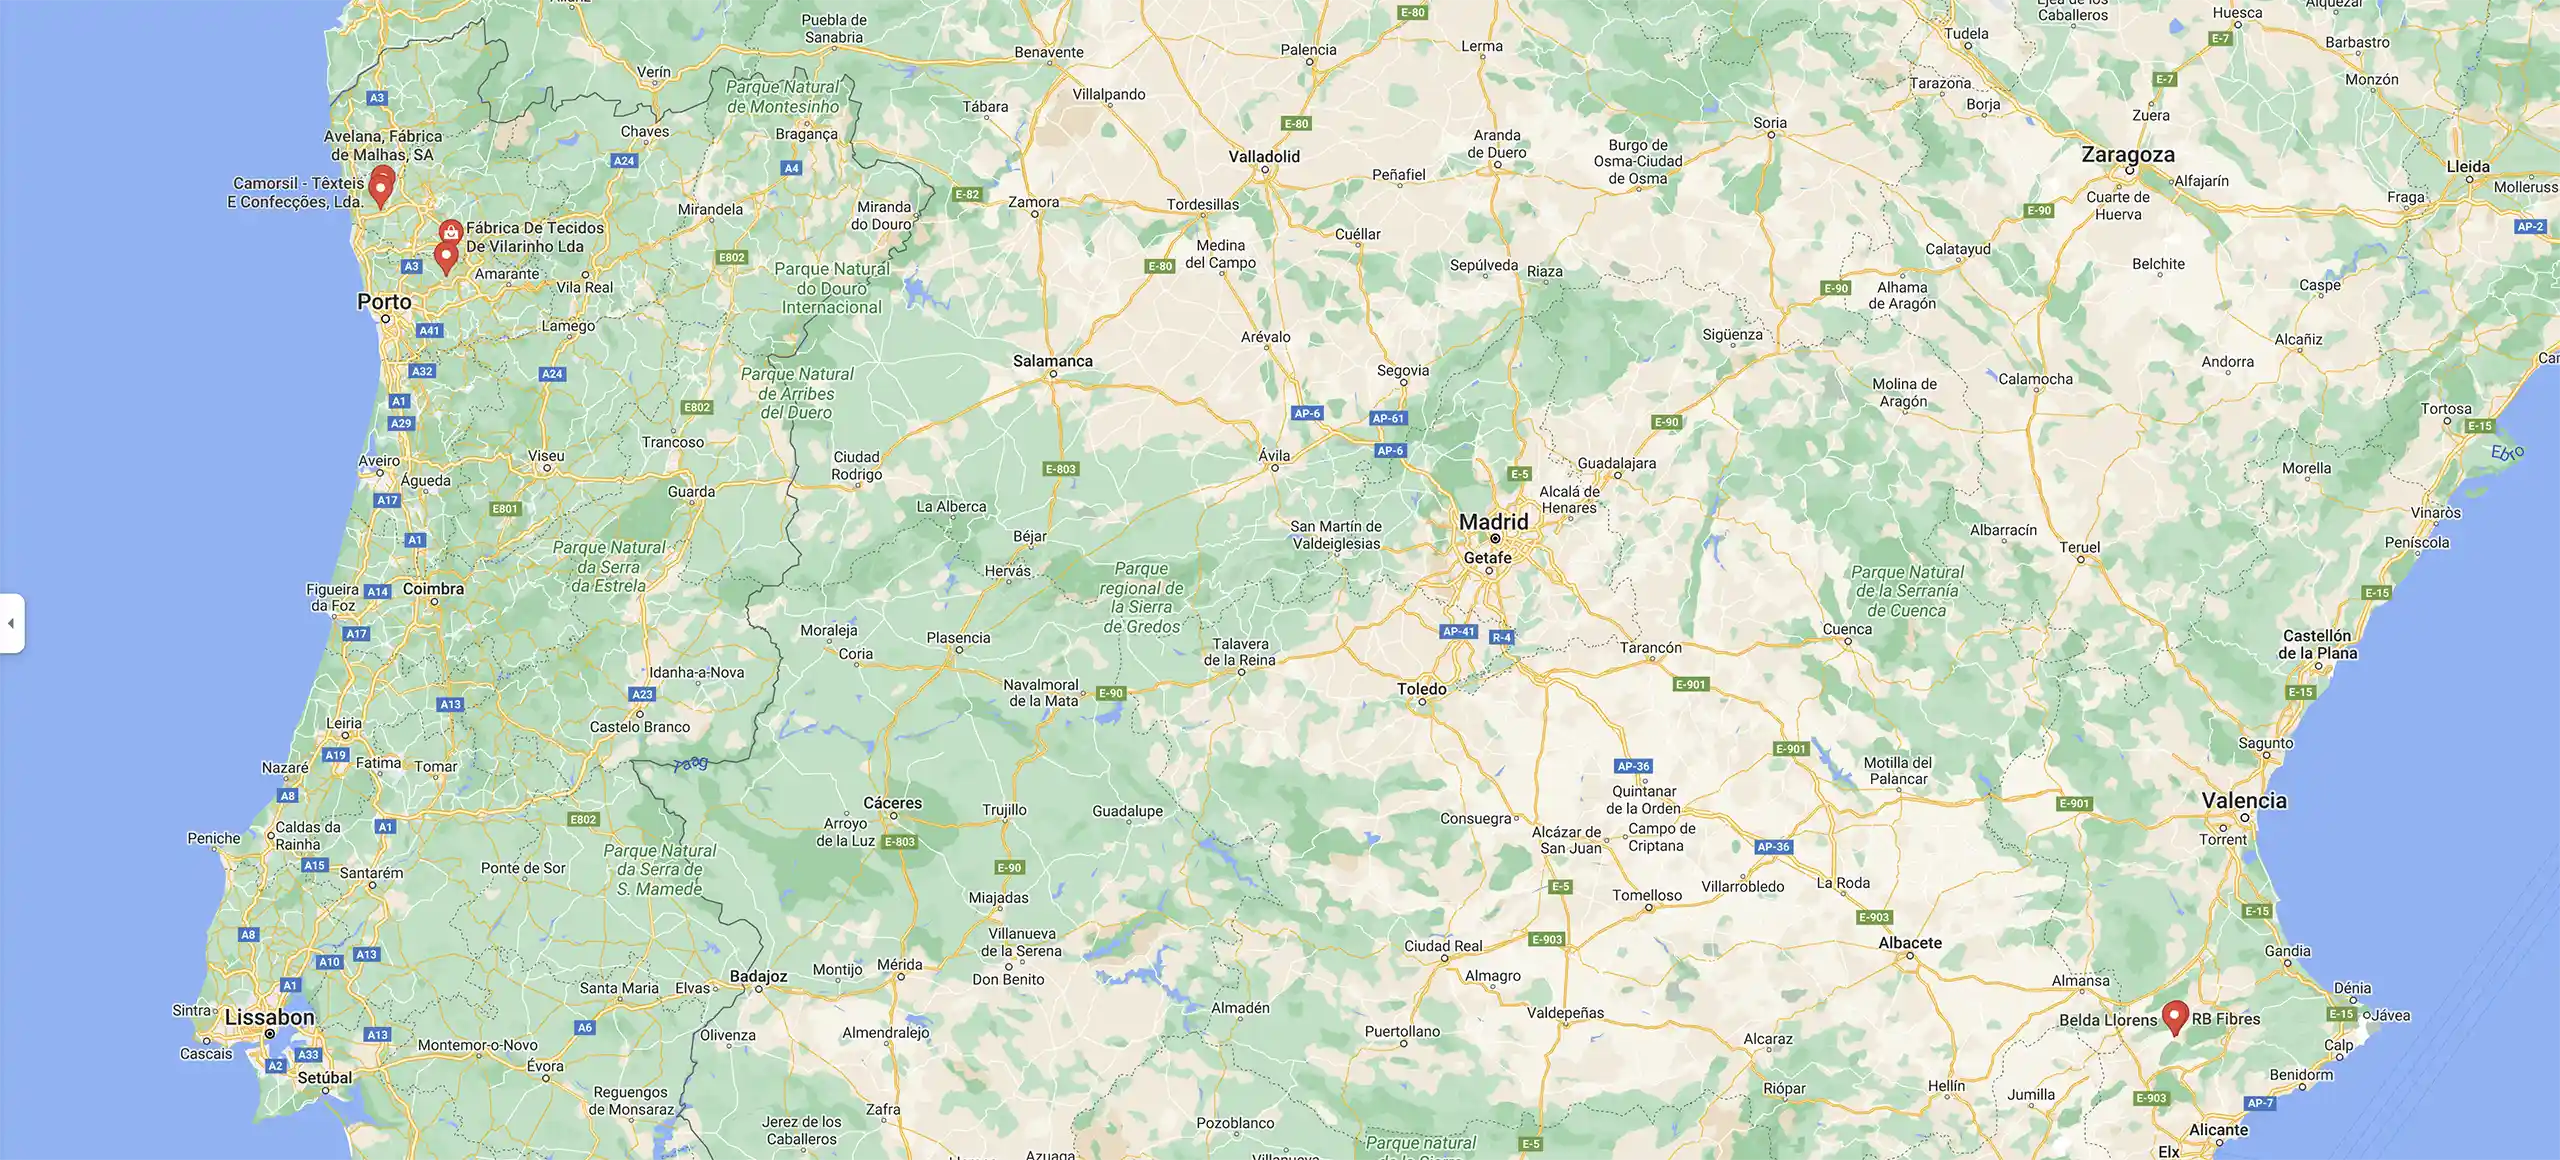 Google maps afbeelding met punten waar de fabrieken staan waar common|era mee samenwerkt.